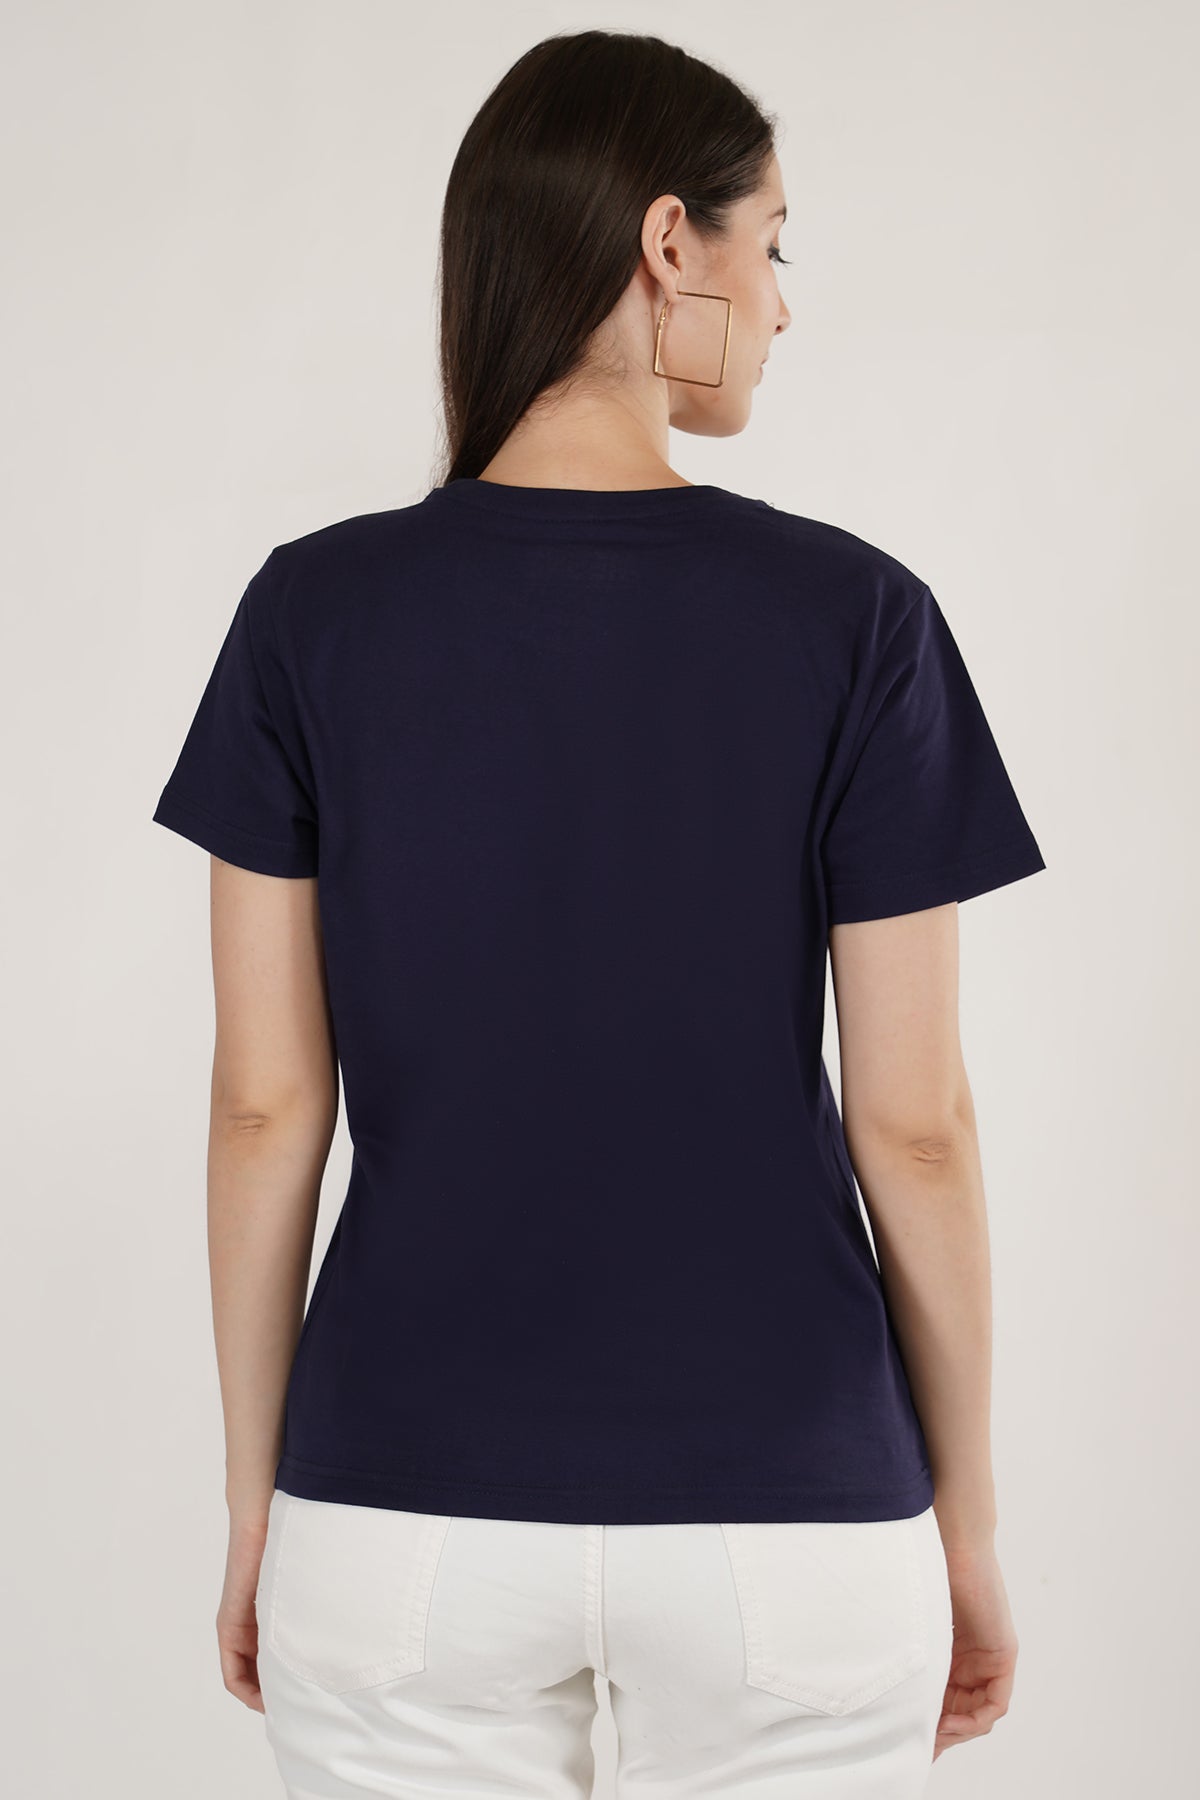 Women Round Neck Navy Blue T-Shirt